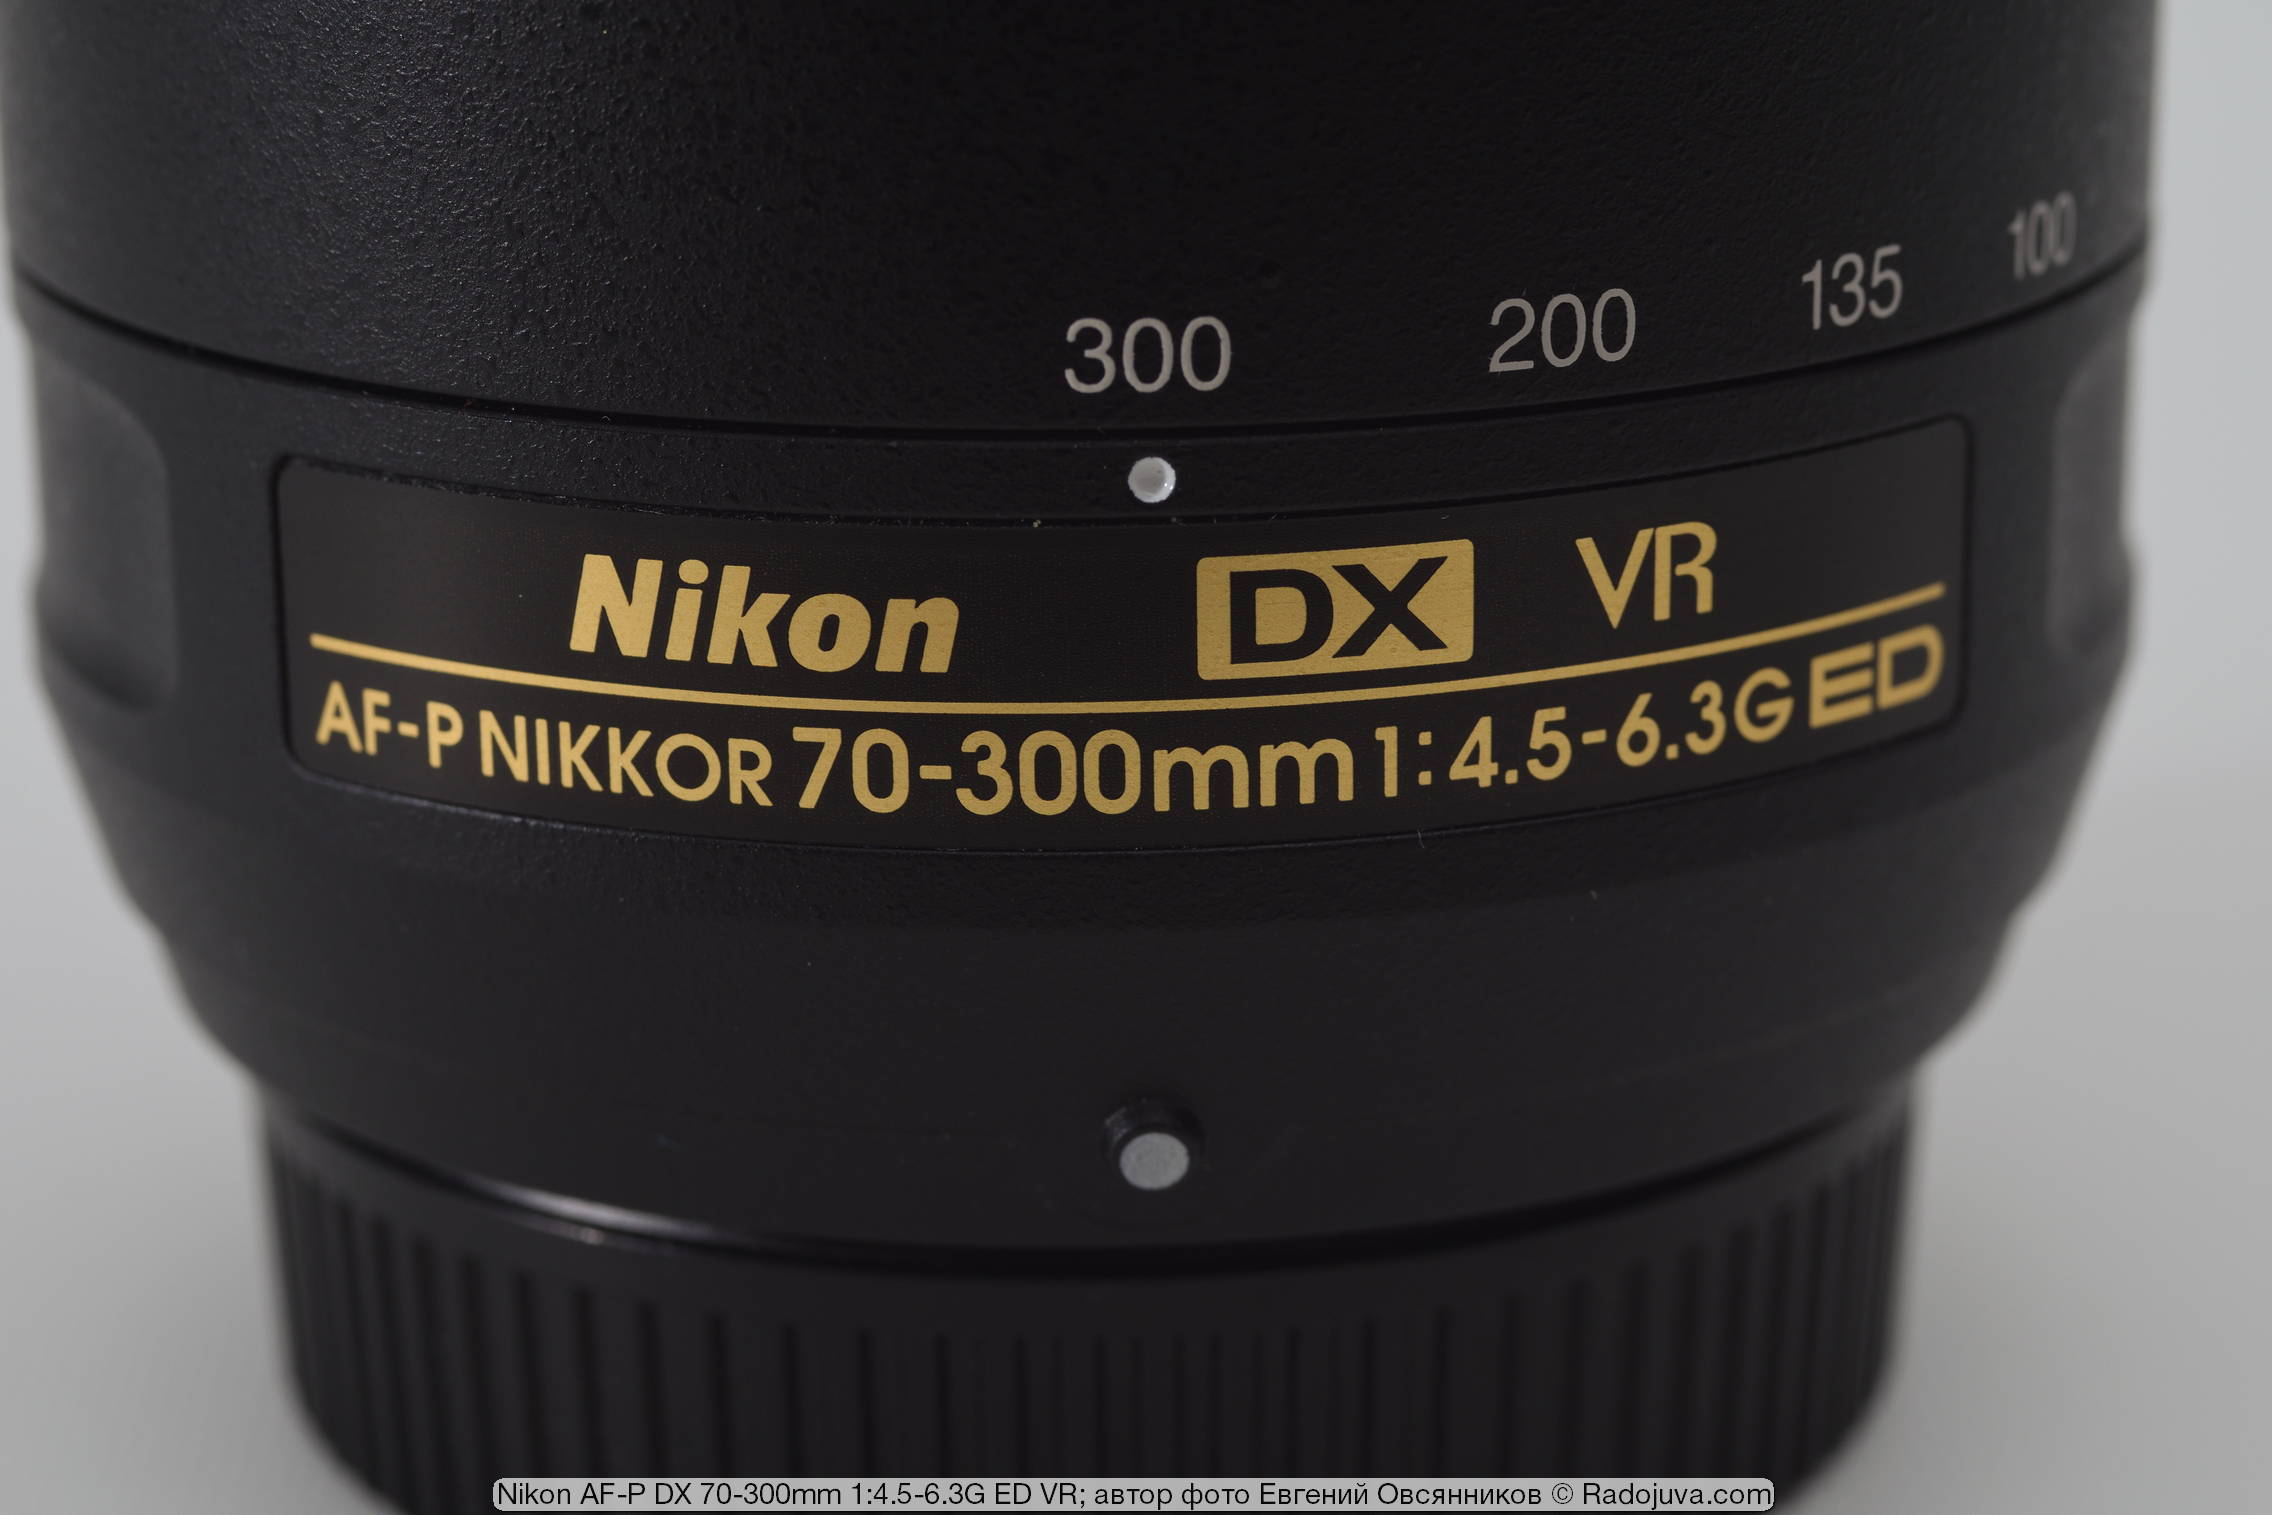 Nikon AF-P DX Nikkor 70-300mm 1: 4.5-6.3G ED VR. Review from the reader  Radozhiva | Happy